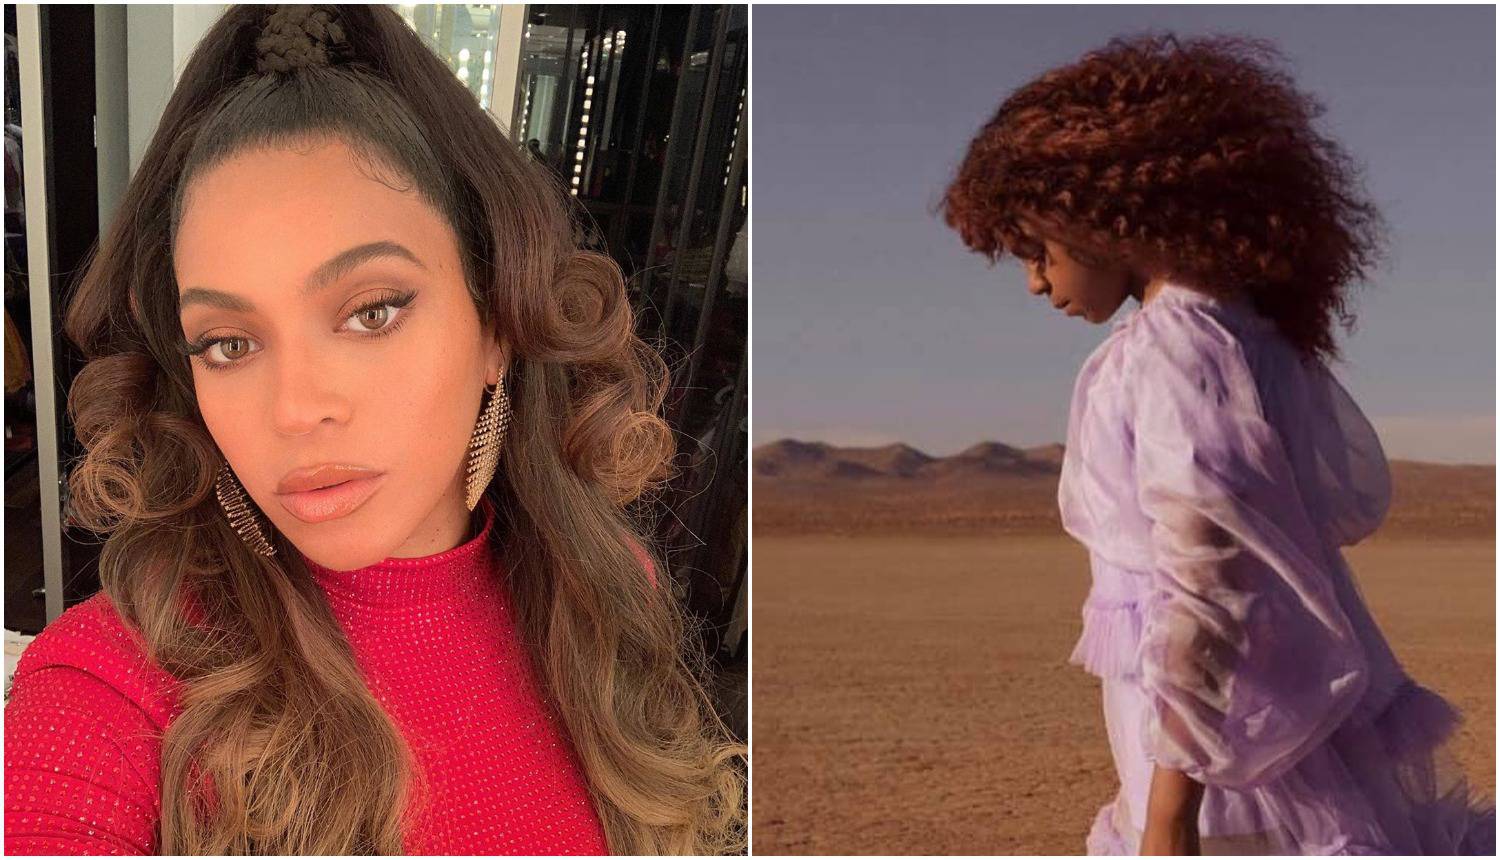 Beyonceinu kći (7) nagradili za pjesmu: 'Stvarno je uspjela...'